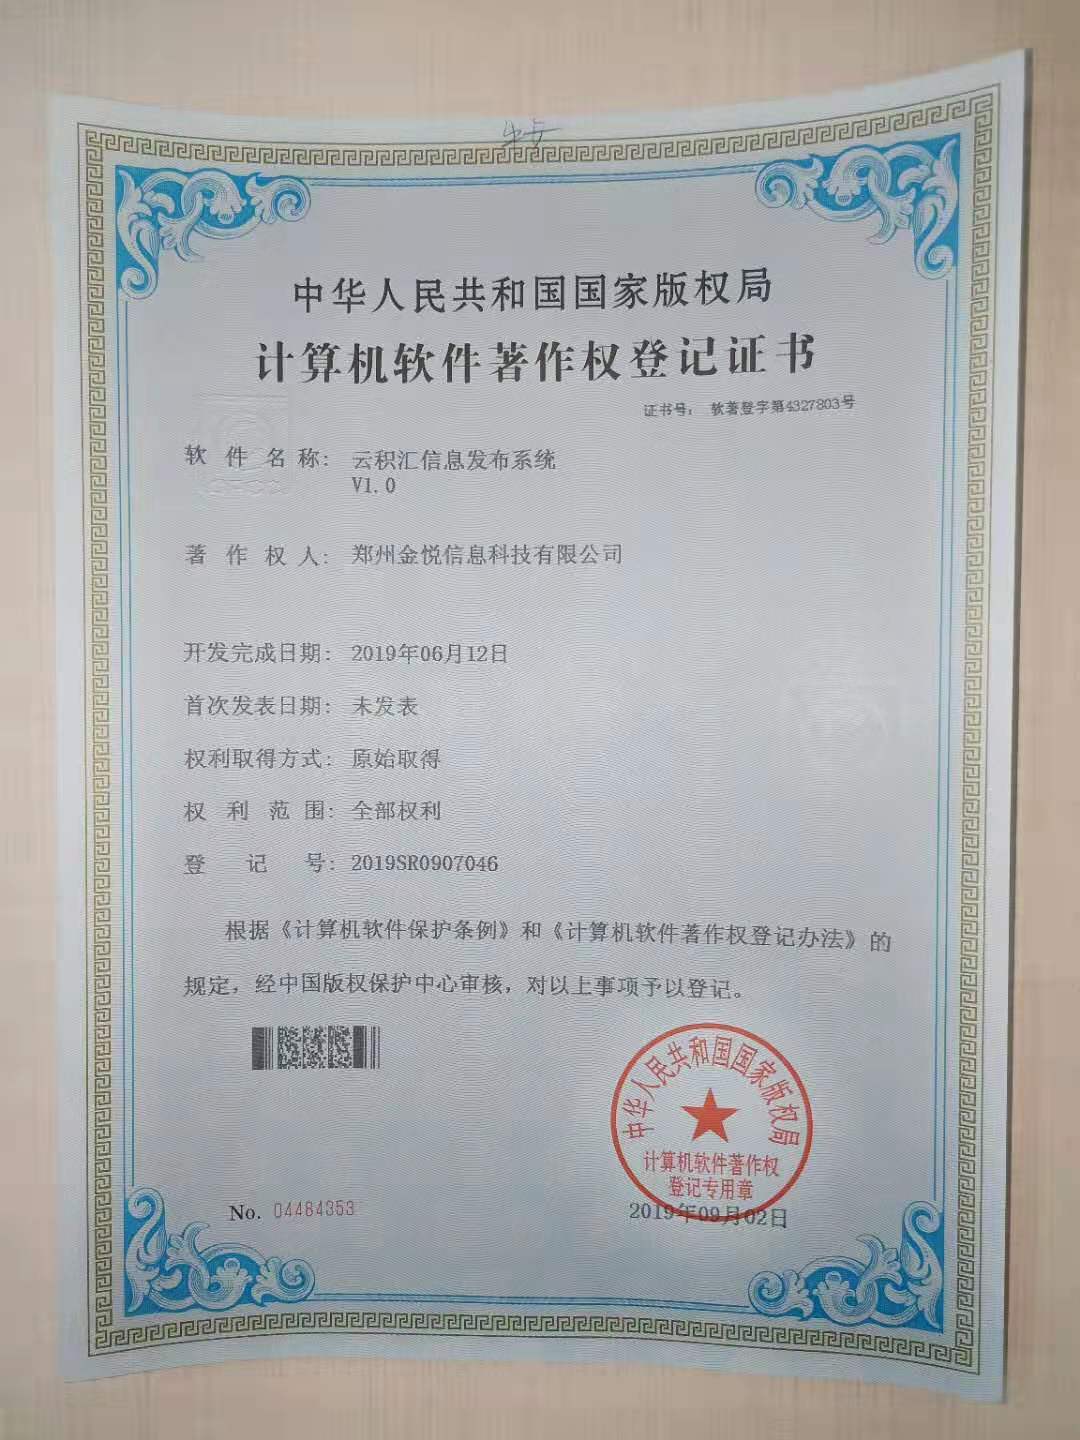 郑州金悦科技喜获三项知识产权登记认证